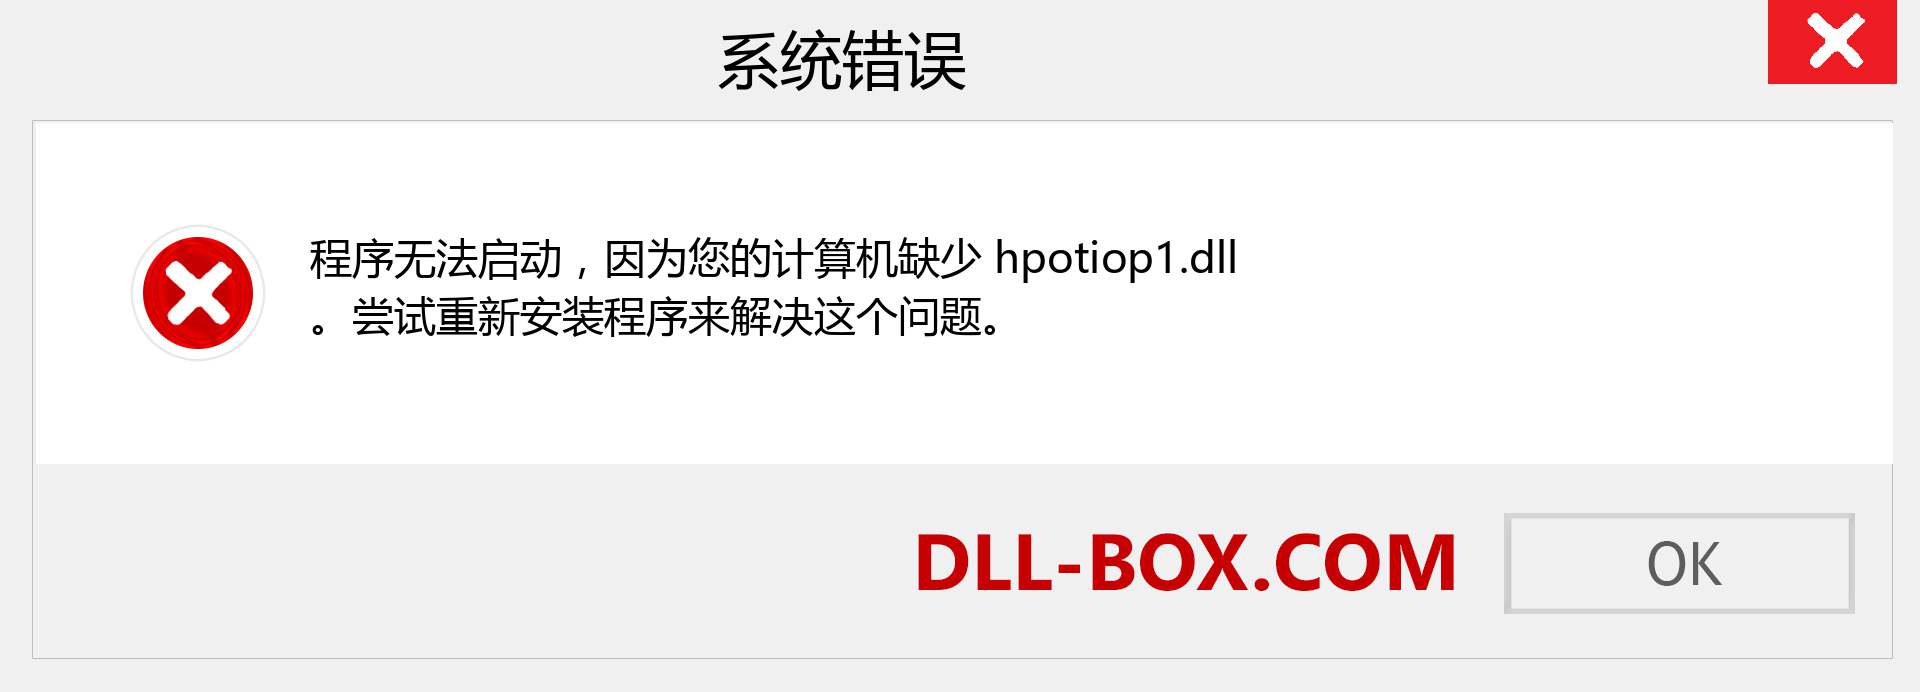 hpotiop1.dll 文件丢失？。 适用于 Windows 7、8、10 的下载 - 修复 Windows、照片、图像上的 hpotiop1 dll 丢失错误